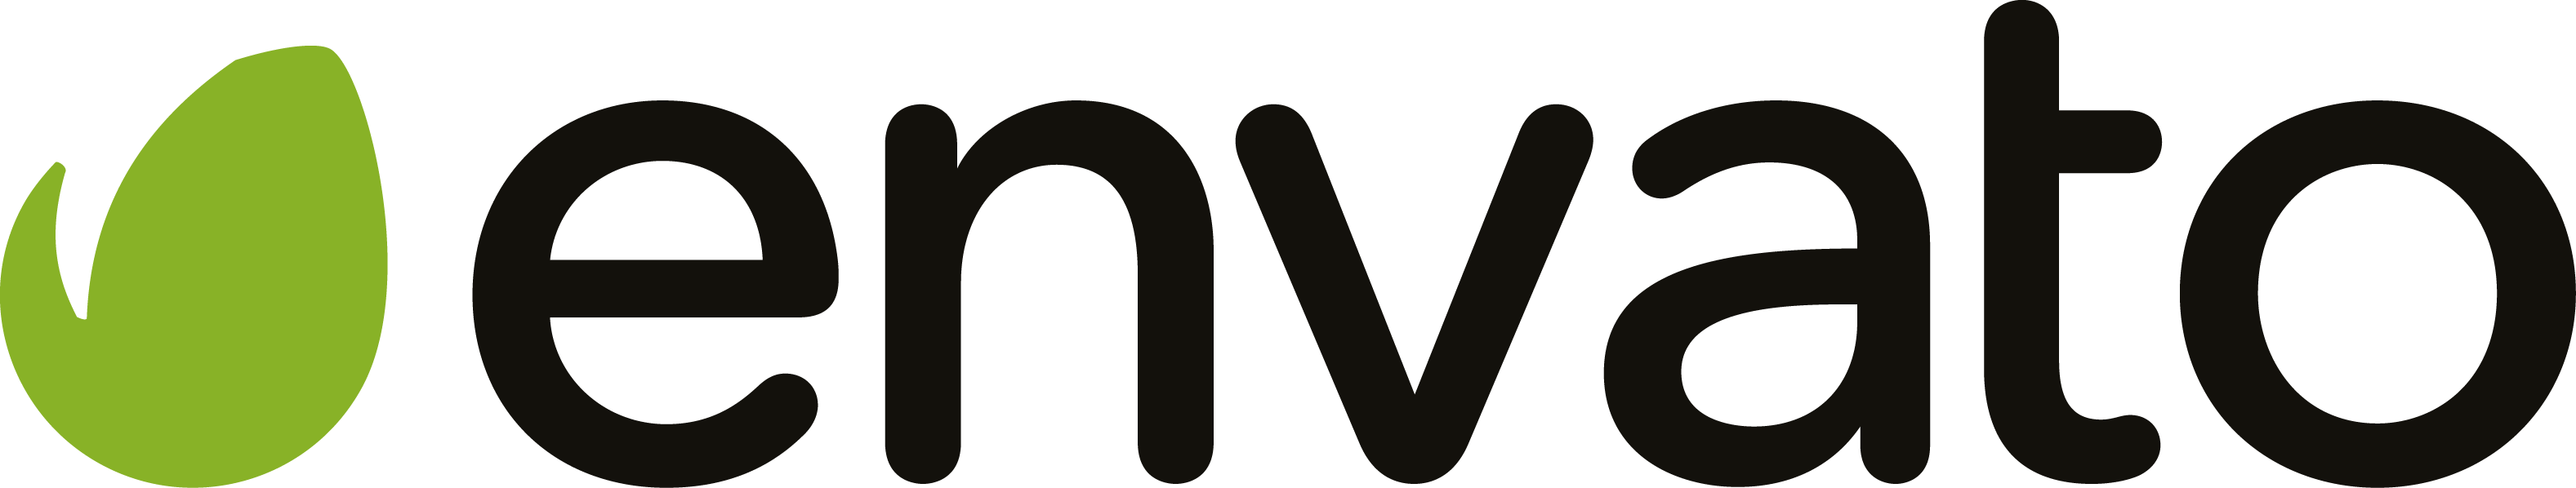 Envato Logo png